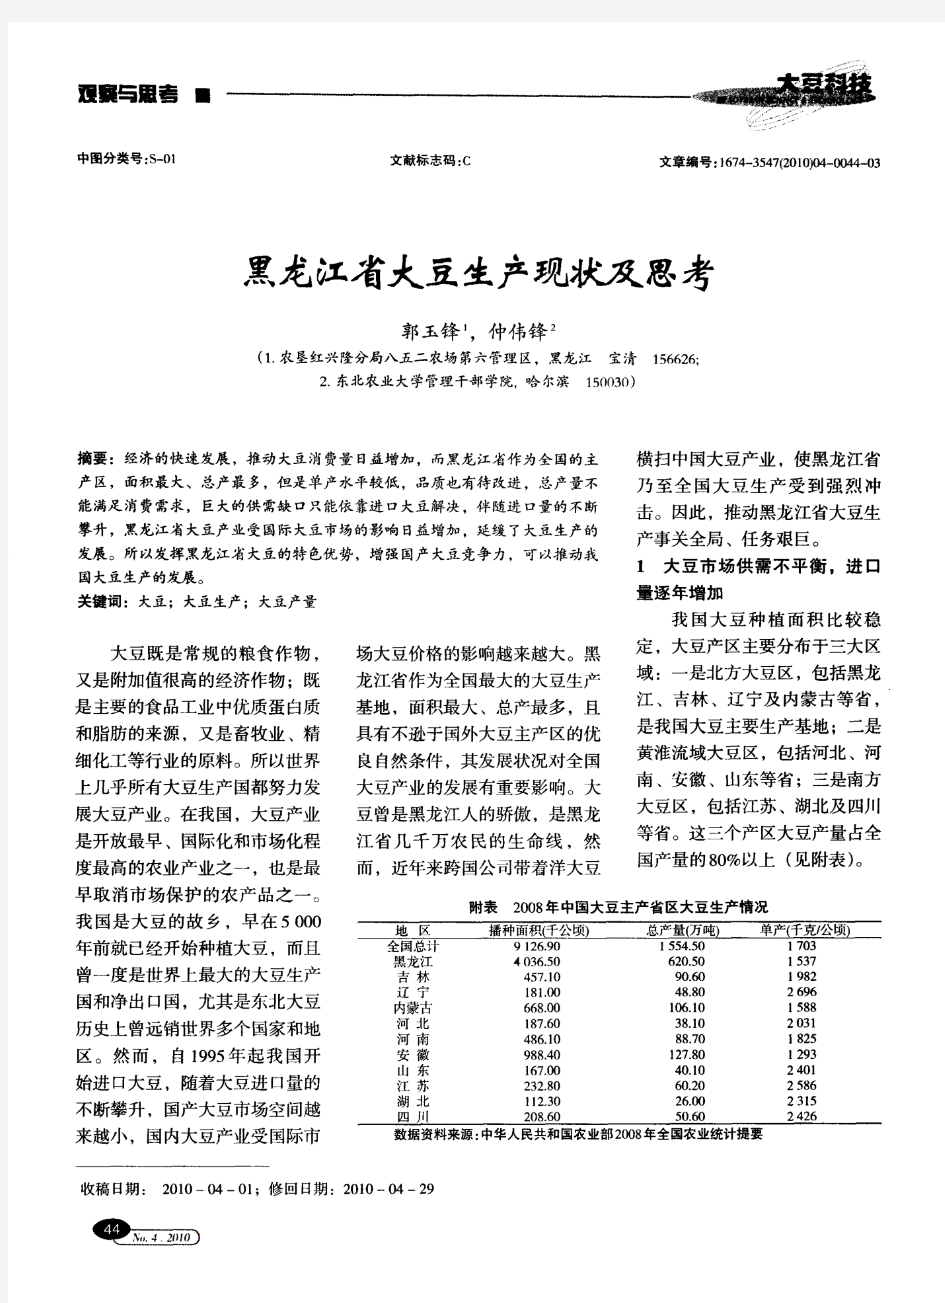 黑龙江省大豆生产现状及思考